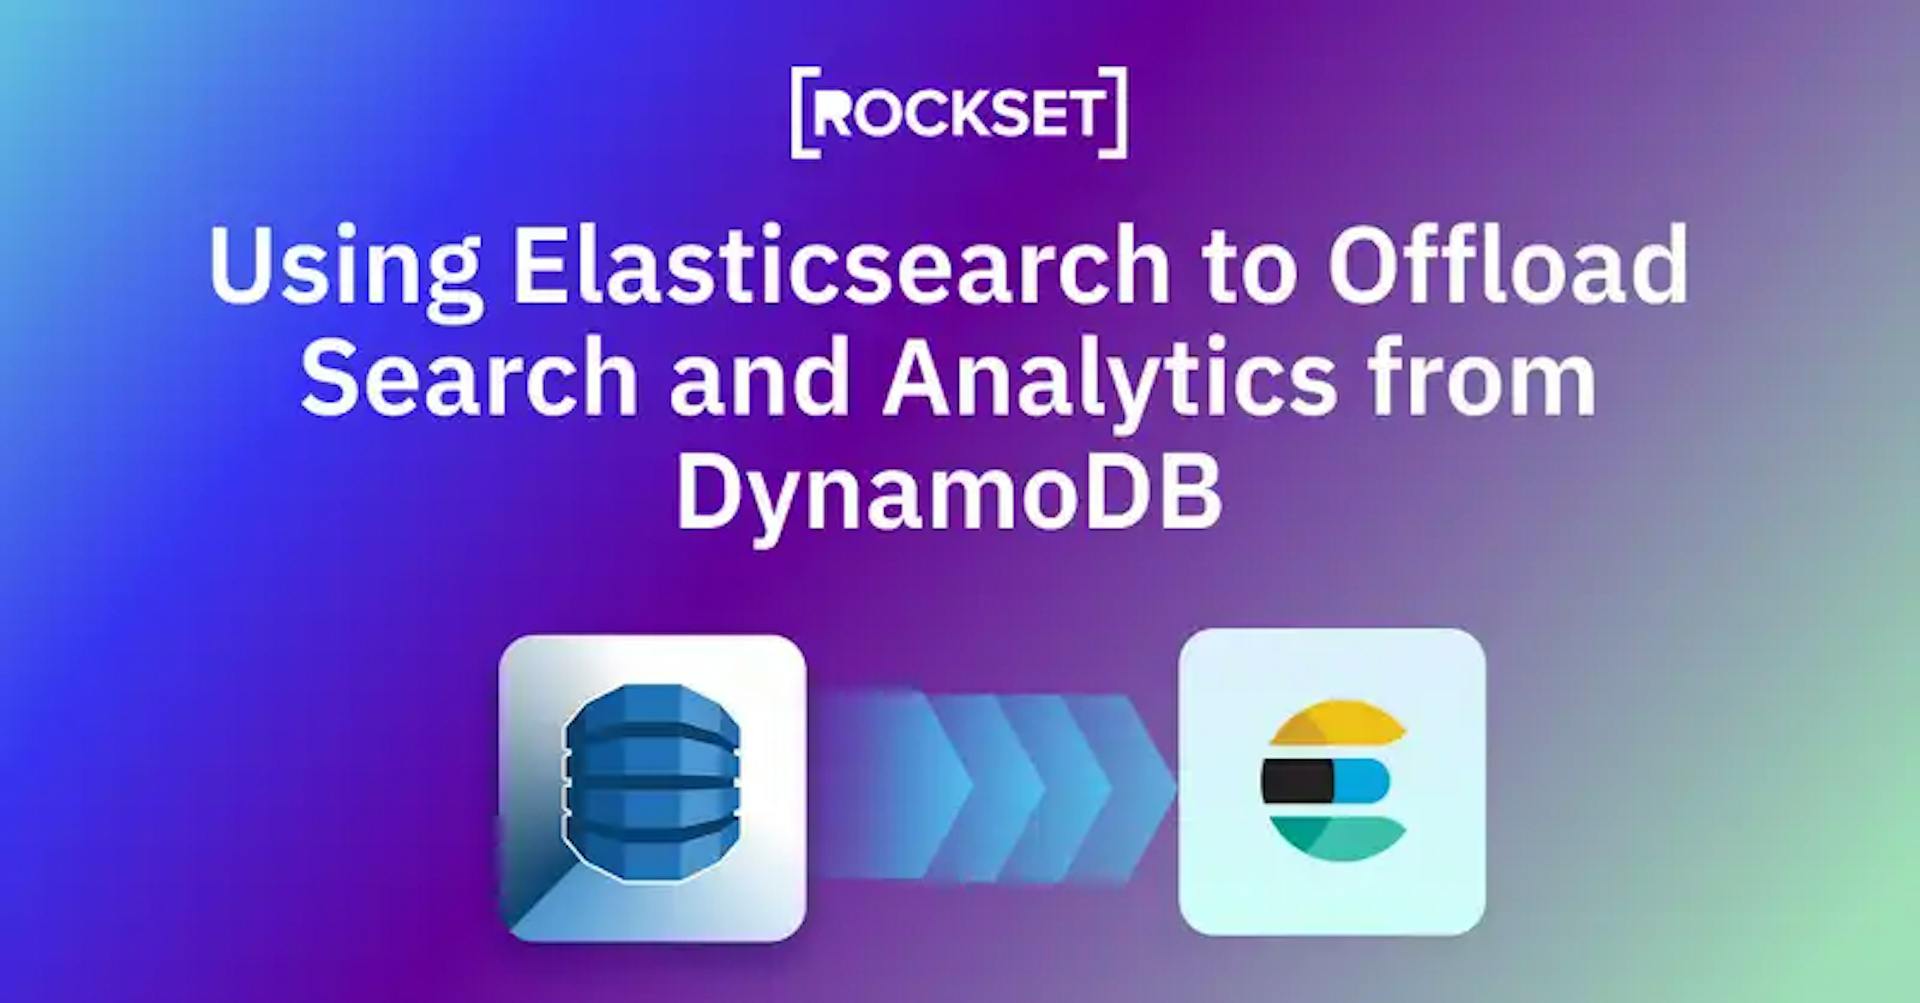 featured image - Verwenden von Elasticsearch zum Auslagern von Such- und Analysefunktionen aus DynamoDB: Vor- und Nachteile